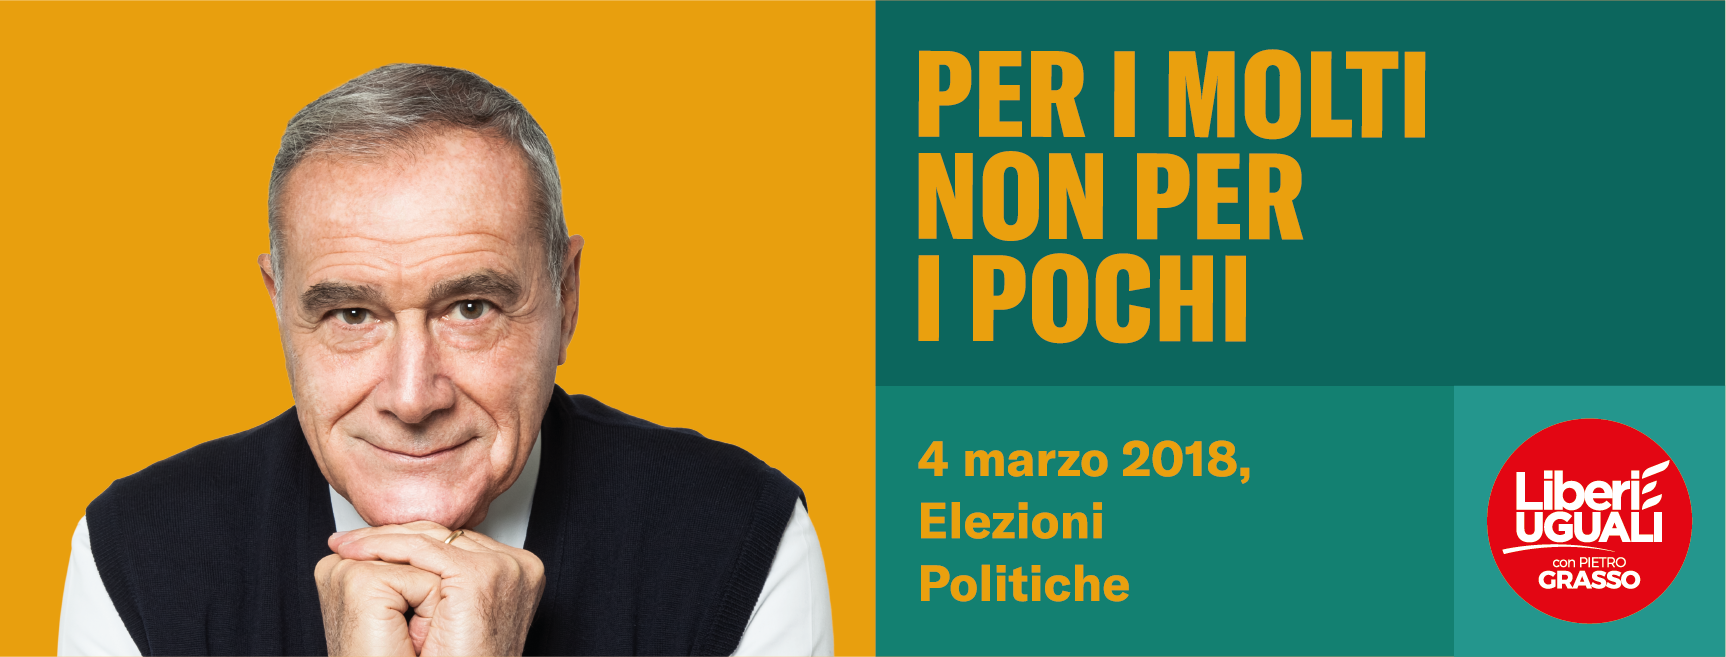 Gioiosa Ionica: iniziativa pubblica con Roberto Speranza mercoledì 21 Febbraio